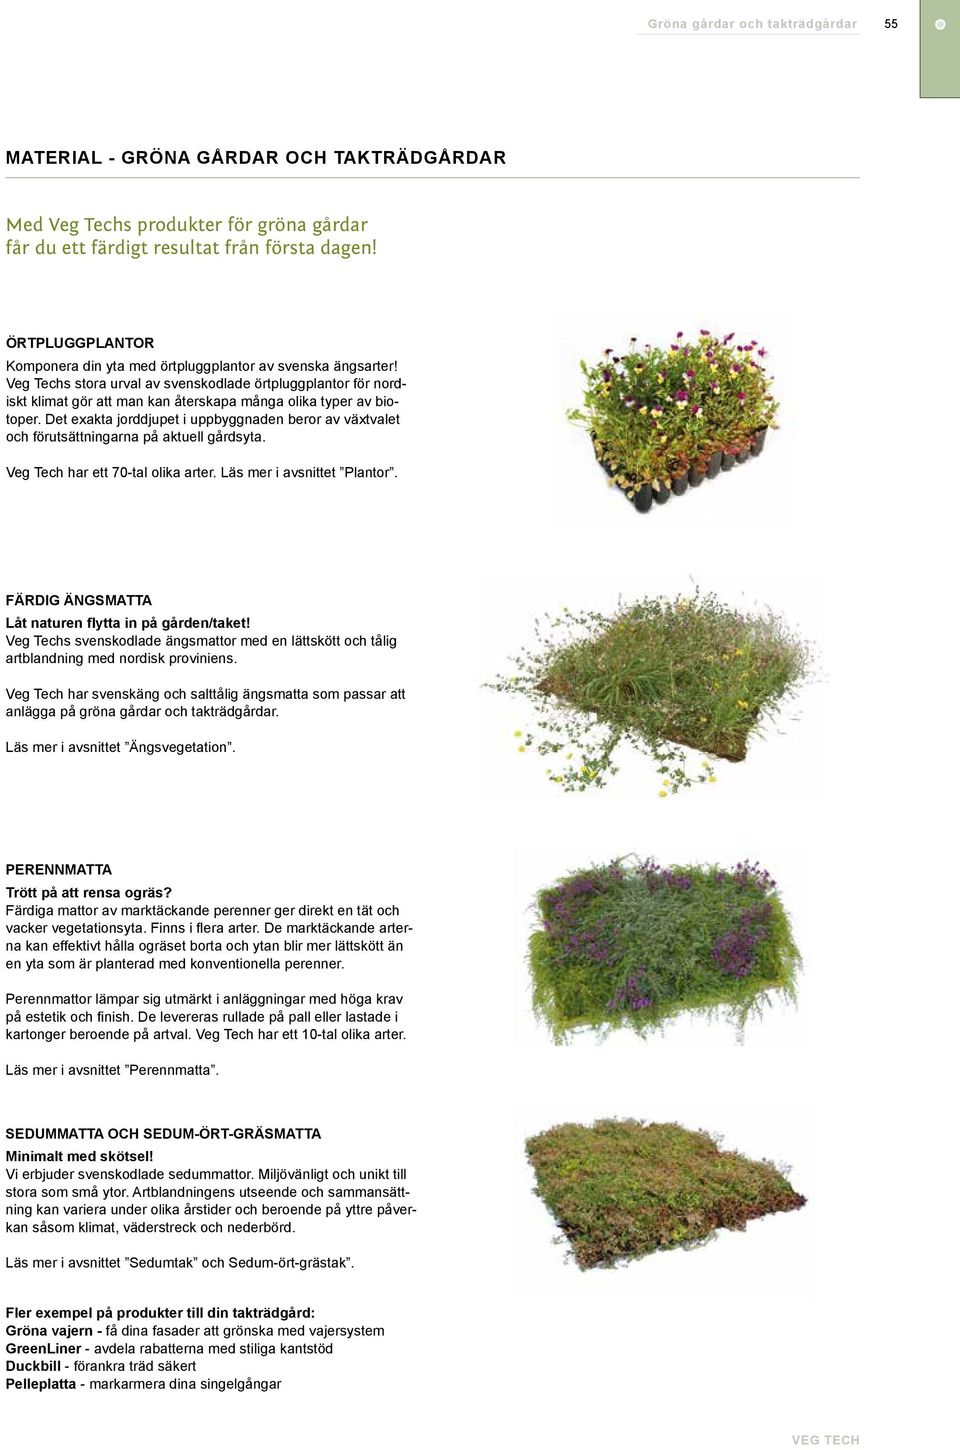 Veg Techs stora urval av svenskodlade örtpluggplantor för nordiskt klimat gör att man kan återskapa många olika typer av biotoper.